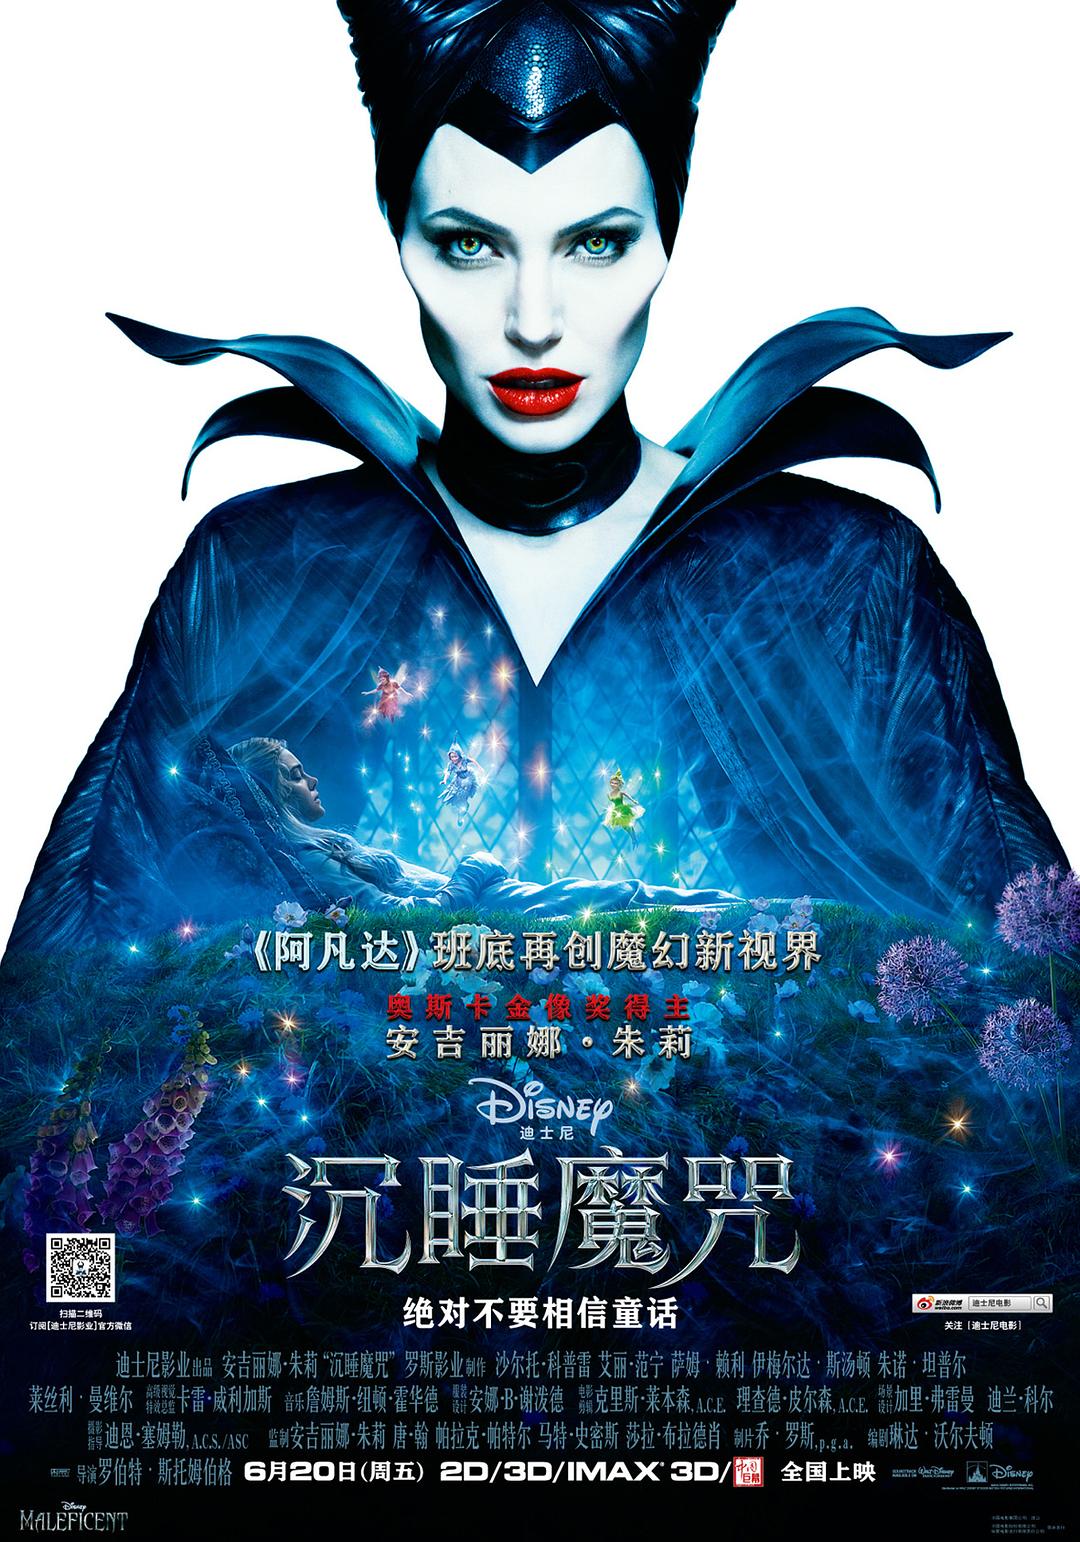 沉睡魔咒/梅尔菲森特 Maleficent.2014.1080p.BluRay.x264.DTS-HD.MA.7.1-SWTYBLZ 9.39GB-1.png